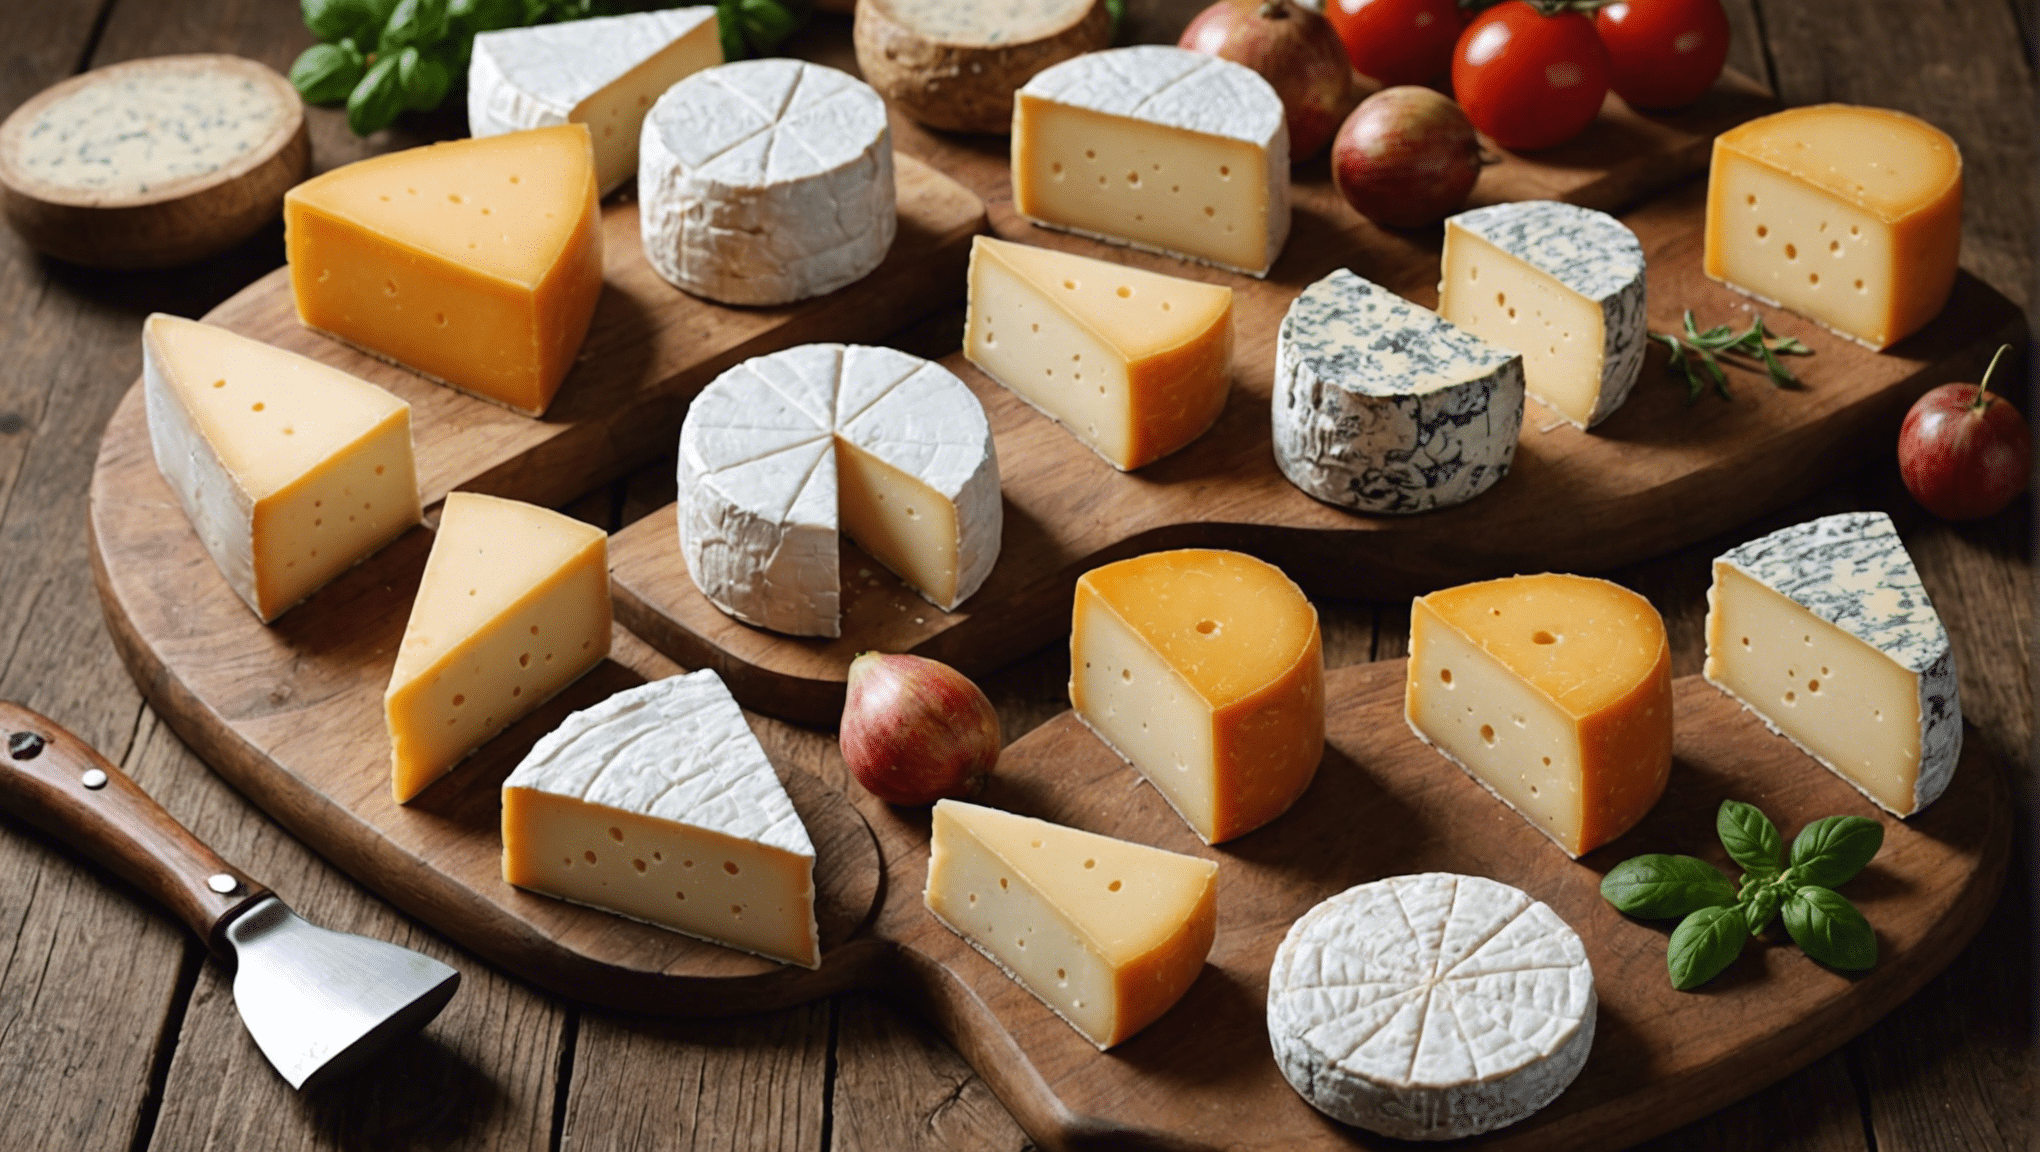 découvrez les fromages du monde incontournables à savourer absolument. des délices fromagers à ne pas manquer pour les amateurs de fromage !